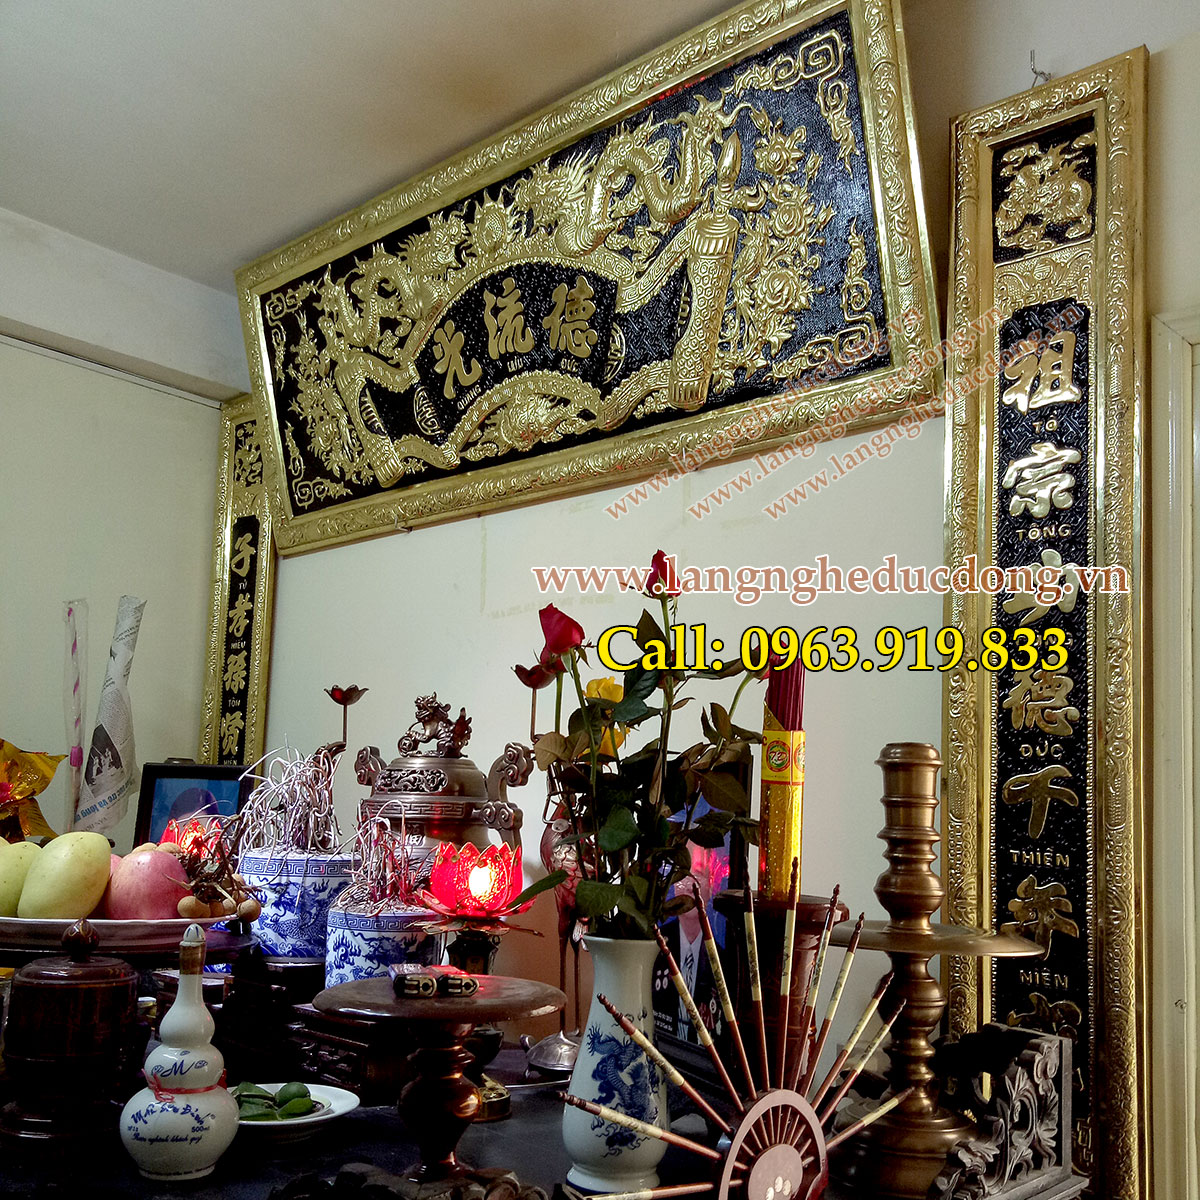 langngheducdong.vn -bộ đồ thờ cúng đồng vàng, đỉnh đồng, hạc đồng, đại tự câu đối